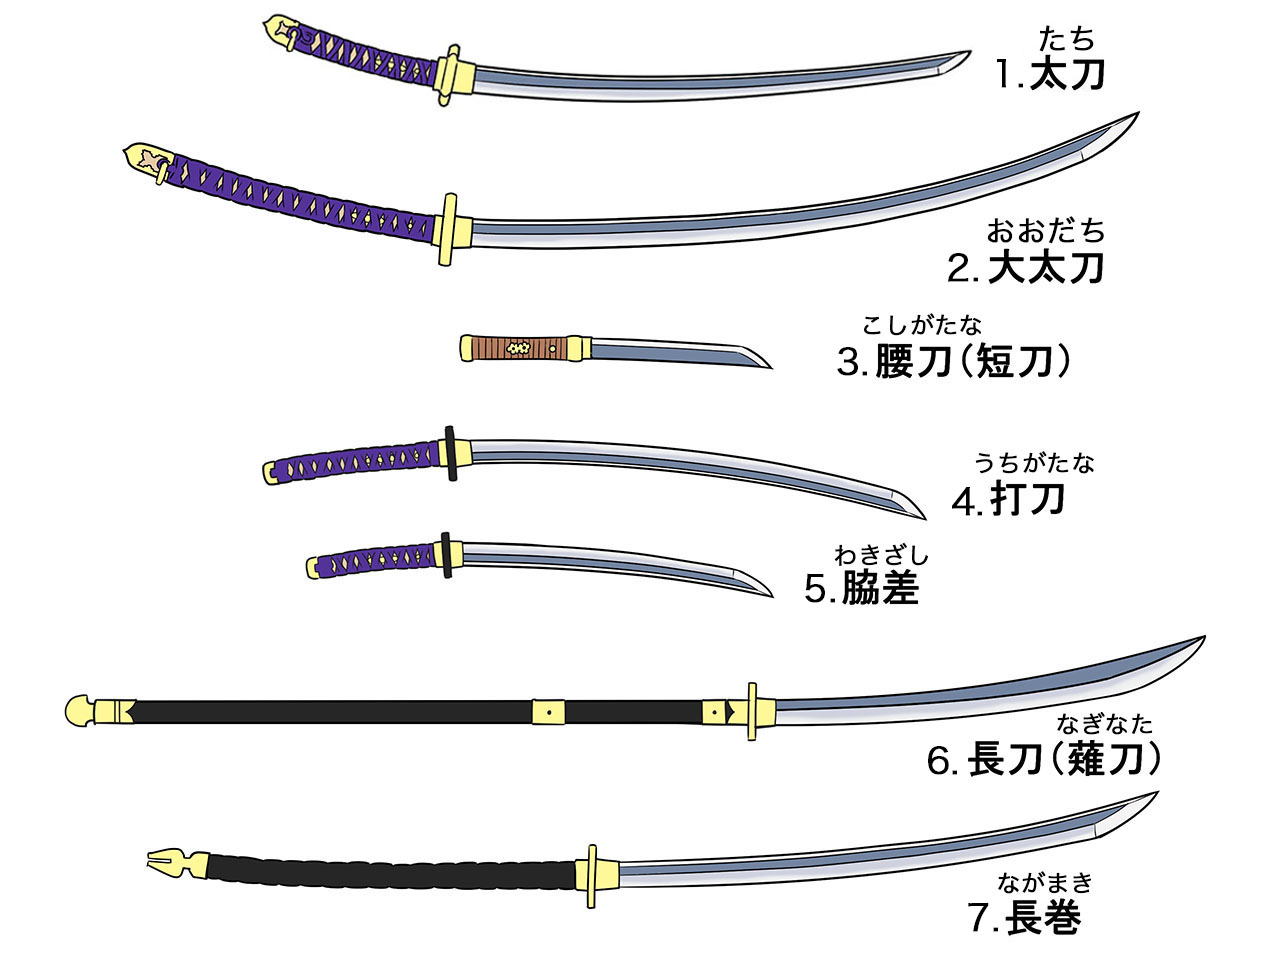 作画資料】日本刀の種類や構造・描き方 | イラスト・マンガ描き方ナビ